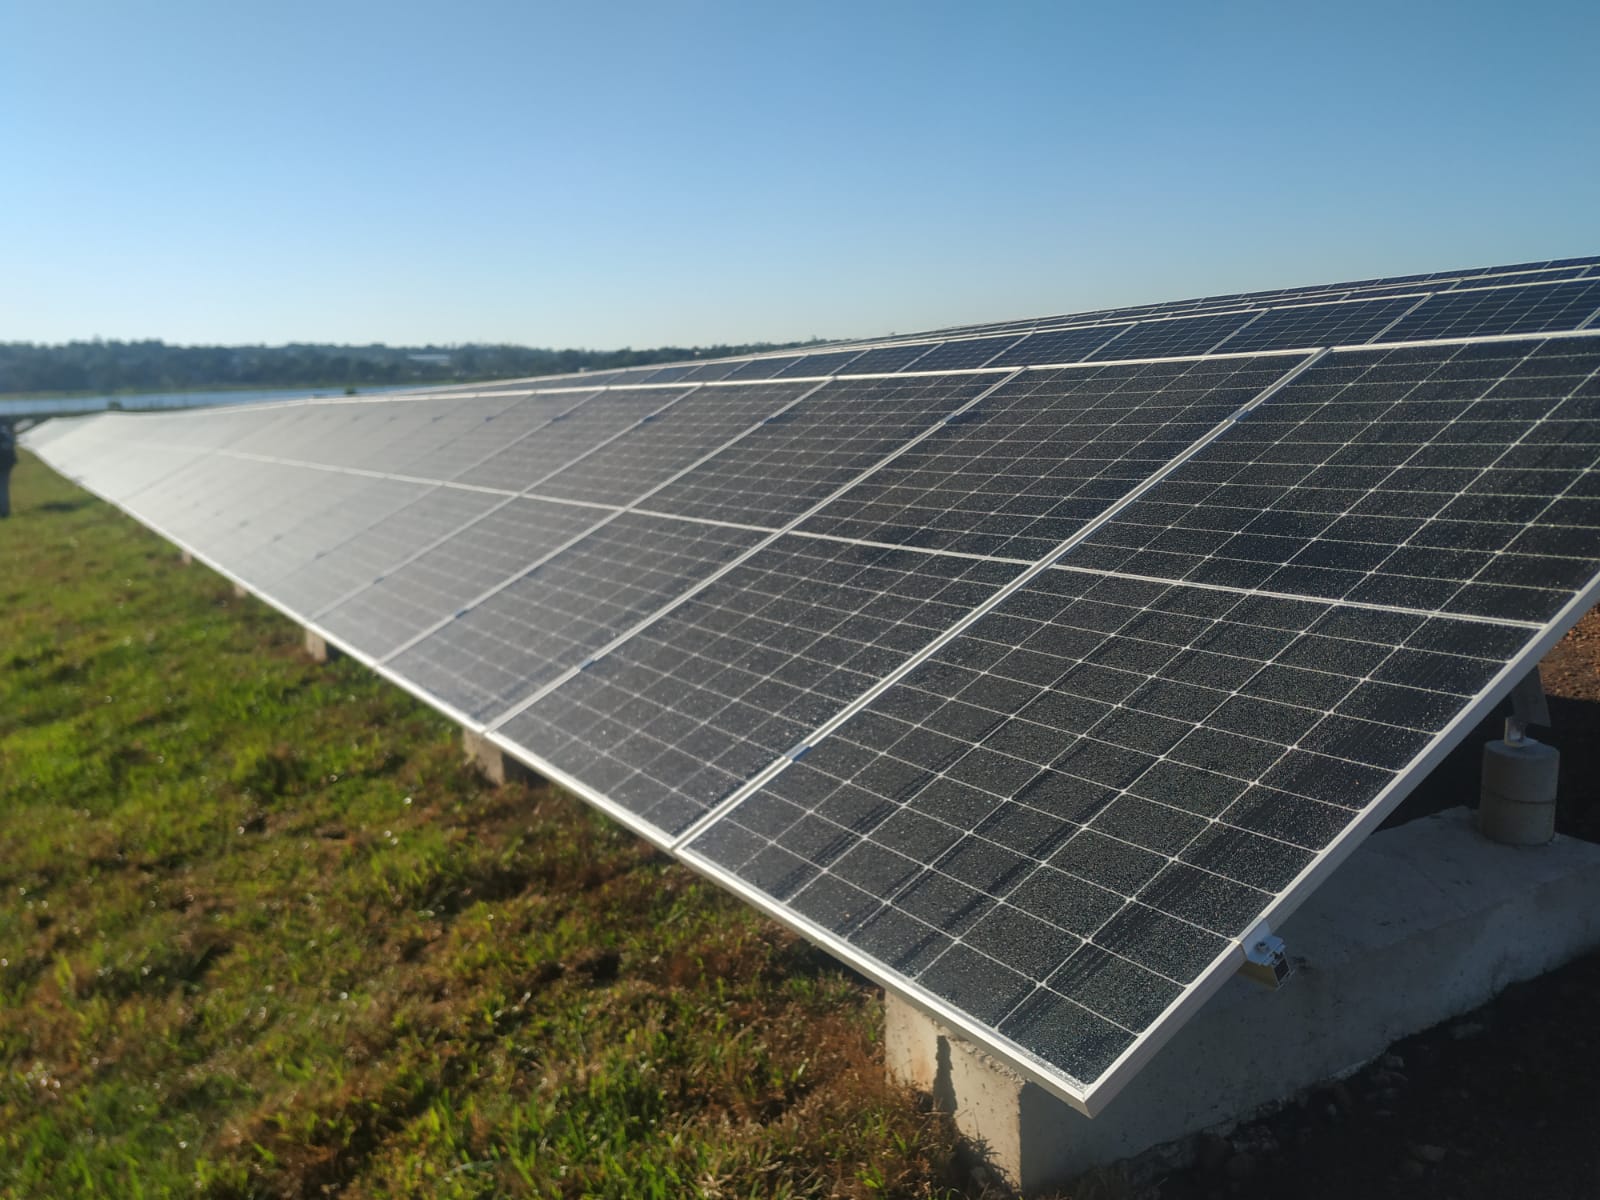 Ponen en marcha el Parque Solar Fotovoltaico "Silicon Misiones", de 5 megas, capaz de abastecer de energía a unas 2 mil familias de Posadas imagen-6